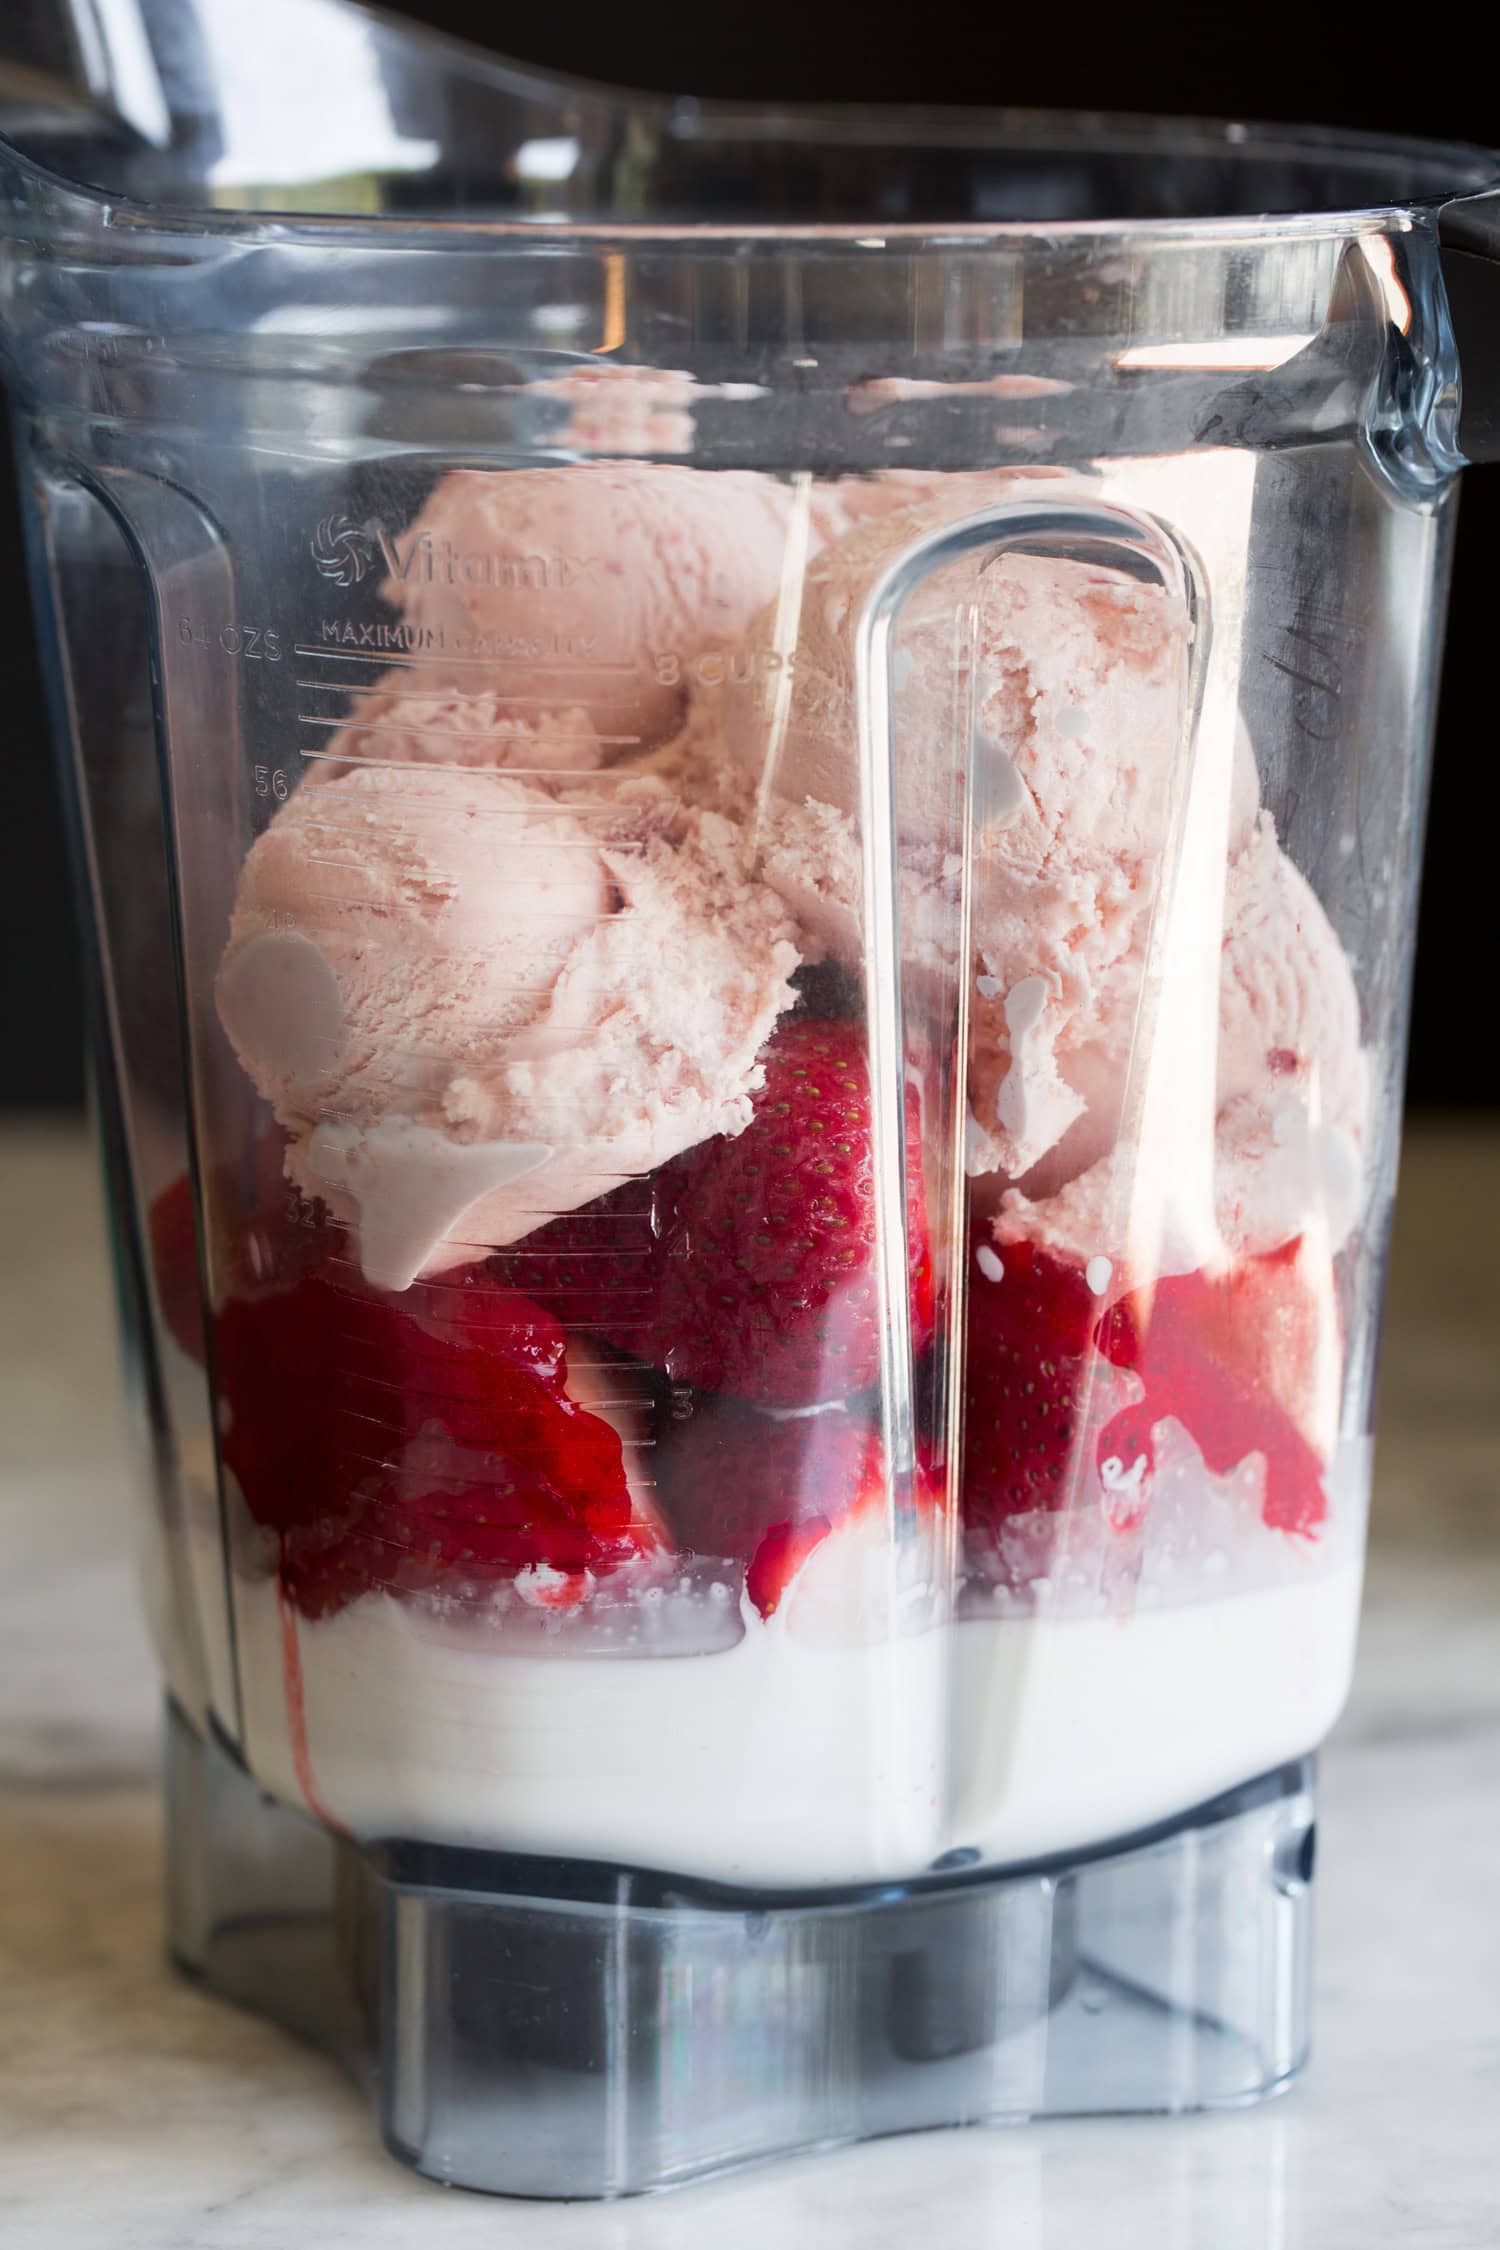 Strawberry milkshake ingredients in blender before blending.